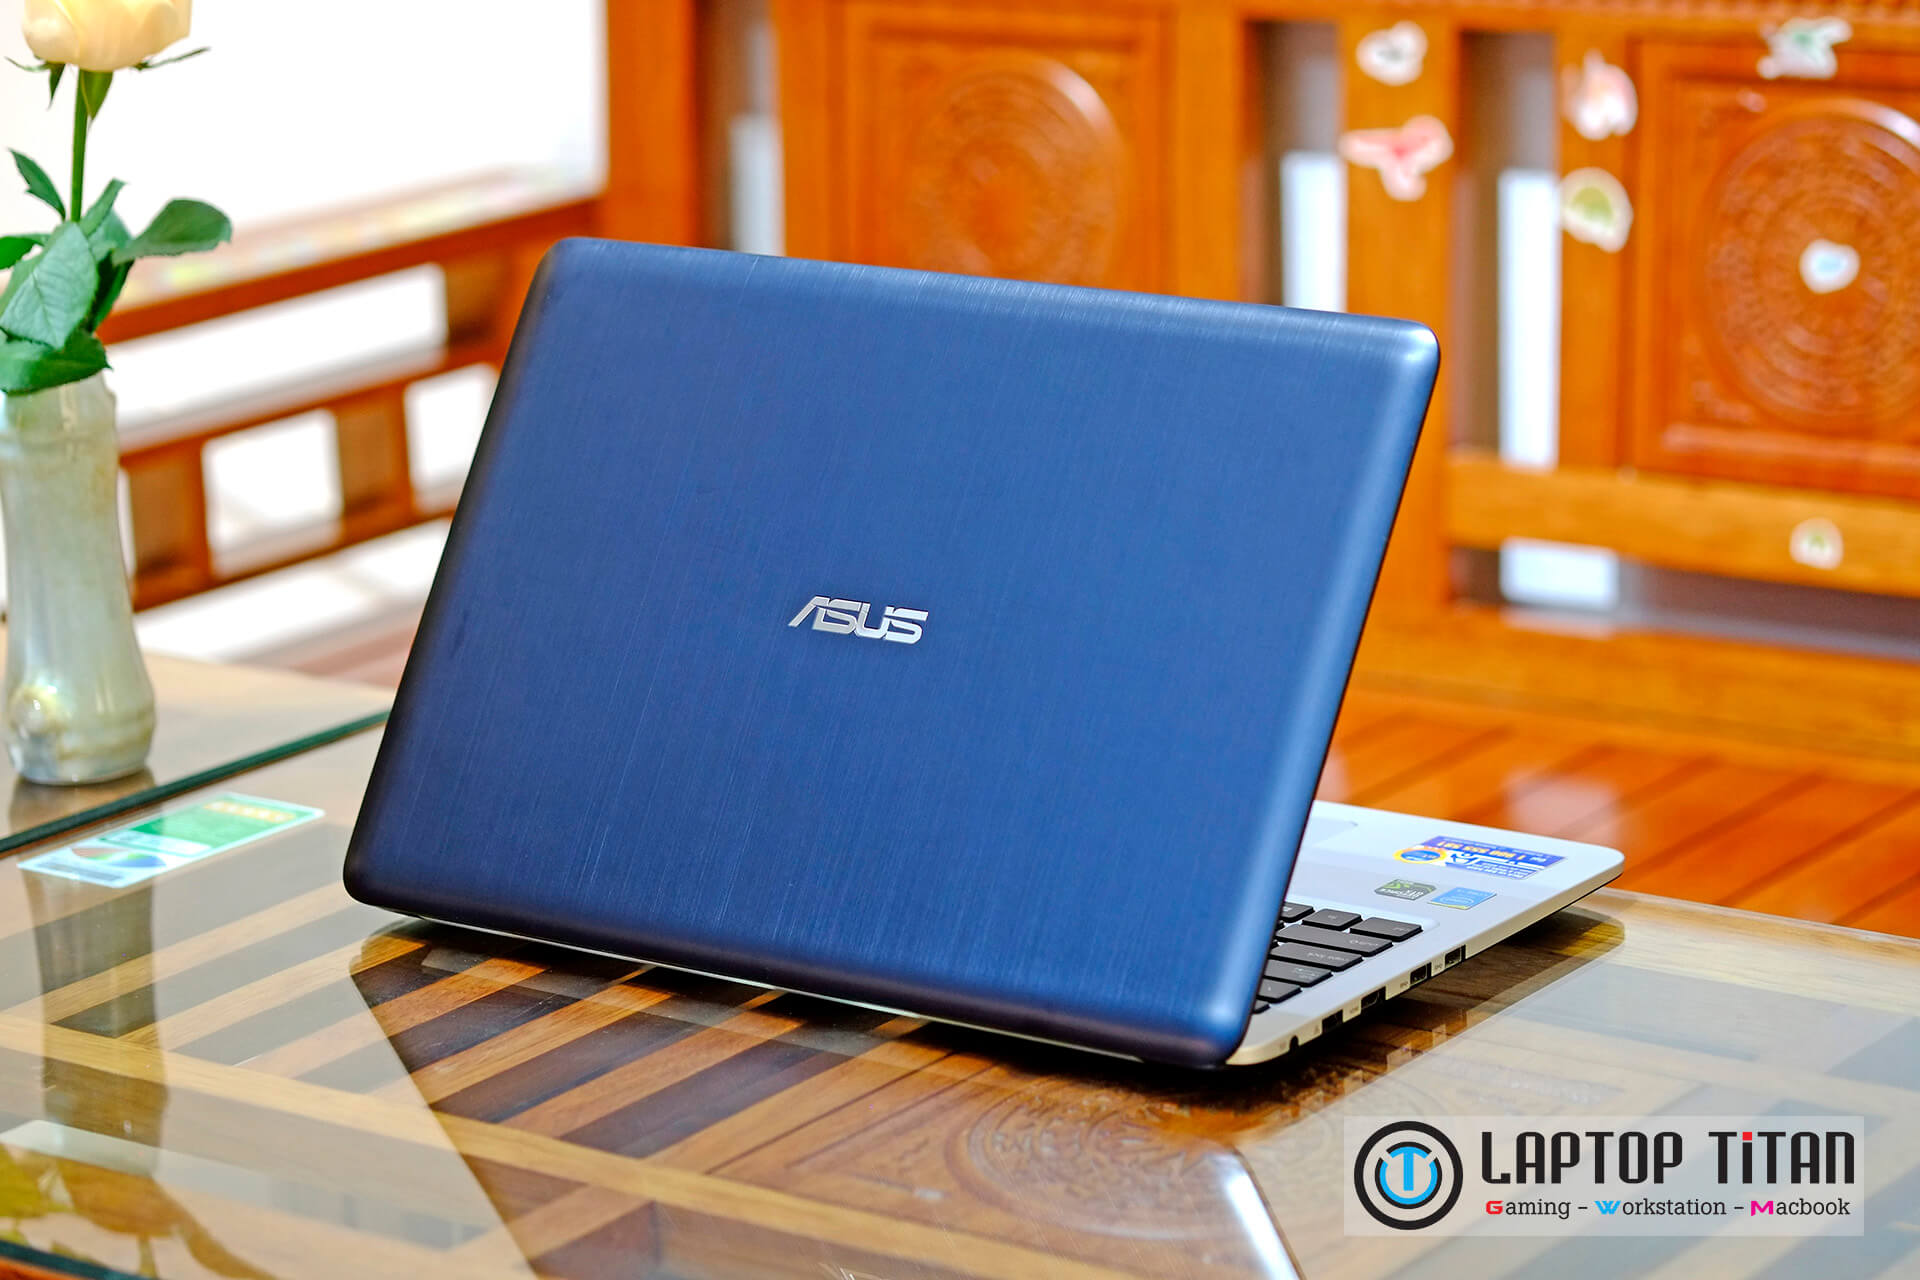 Asus K501Lx Laptop Titan 007